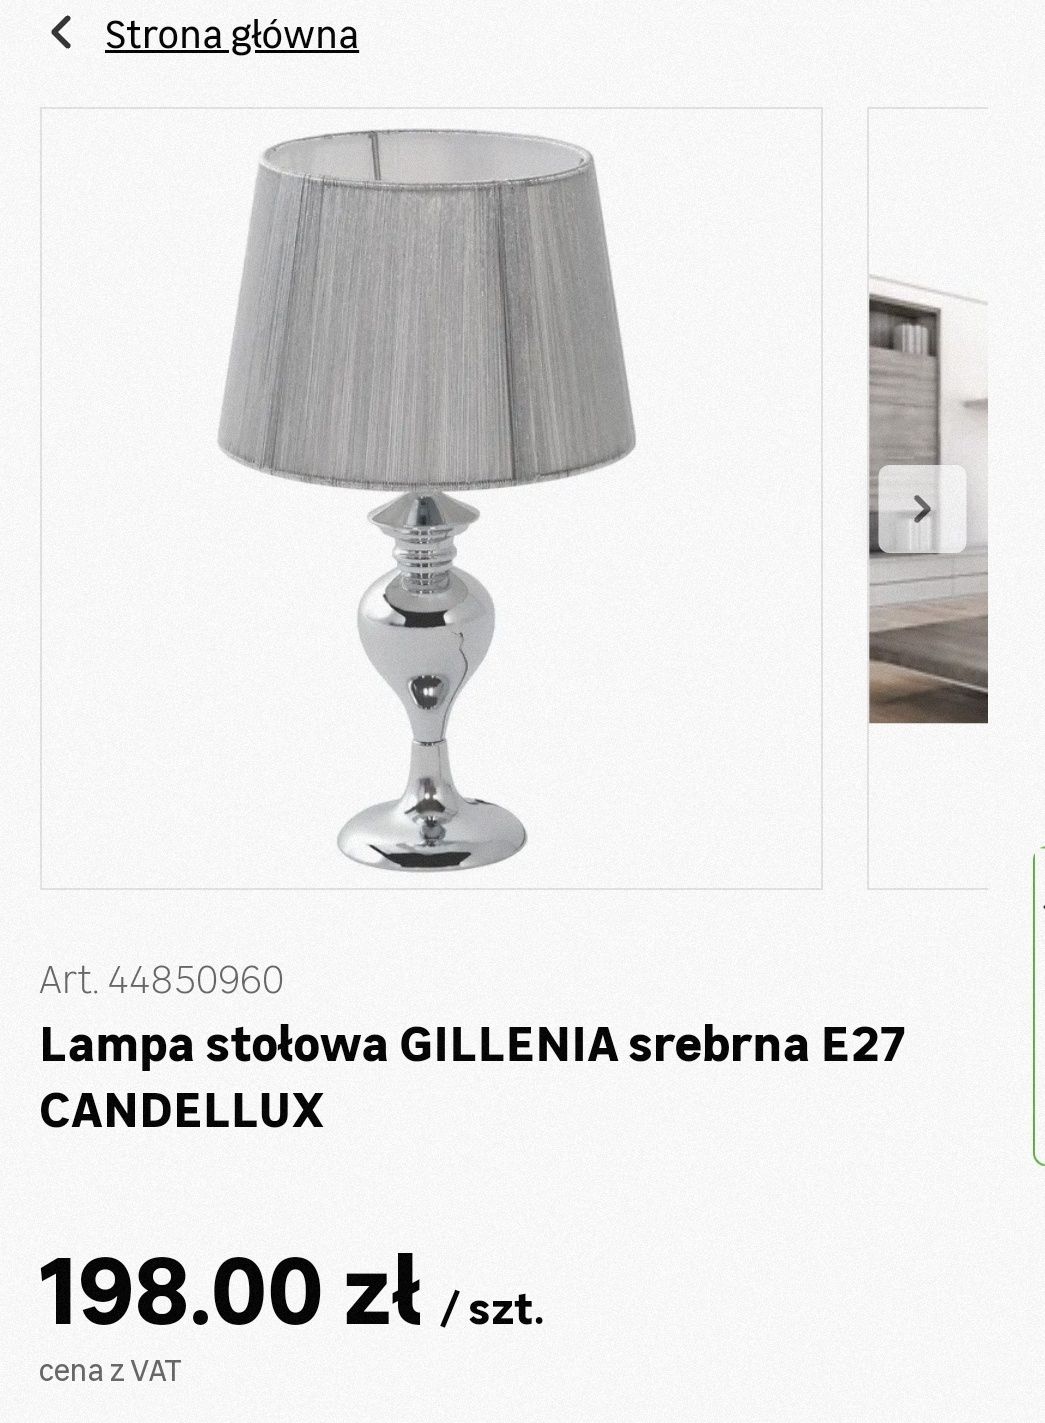 Lampa stołowa Glamour Gillennia srebrna